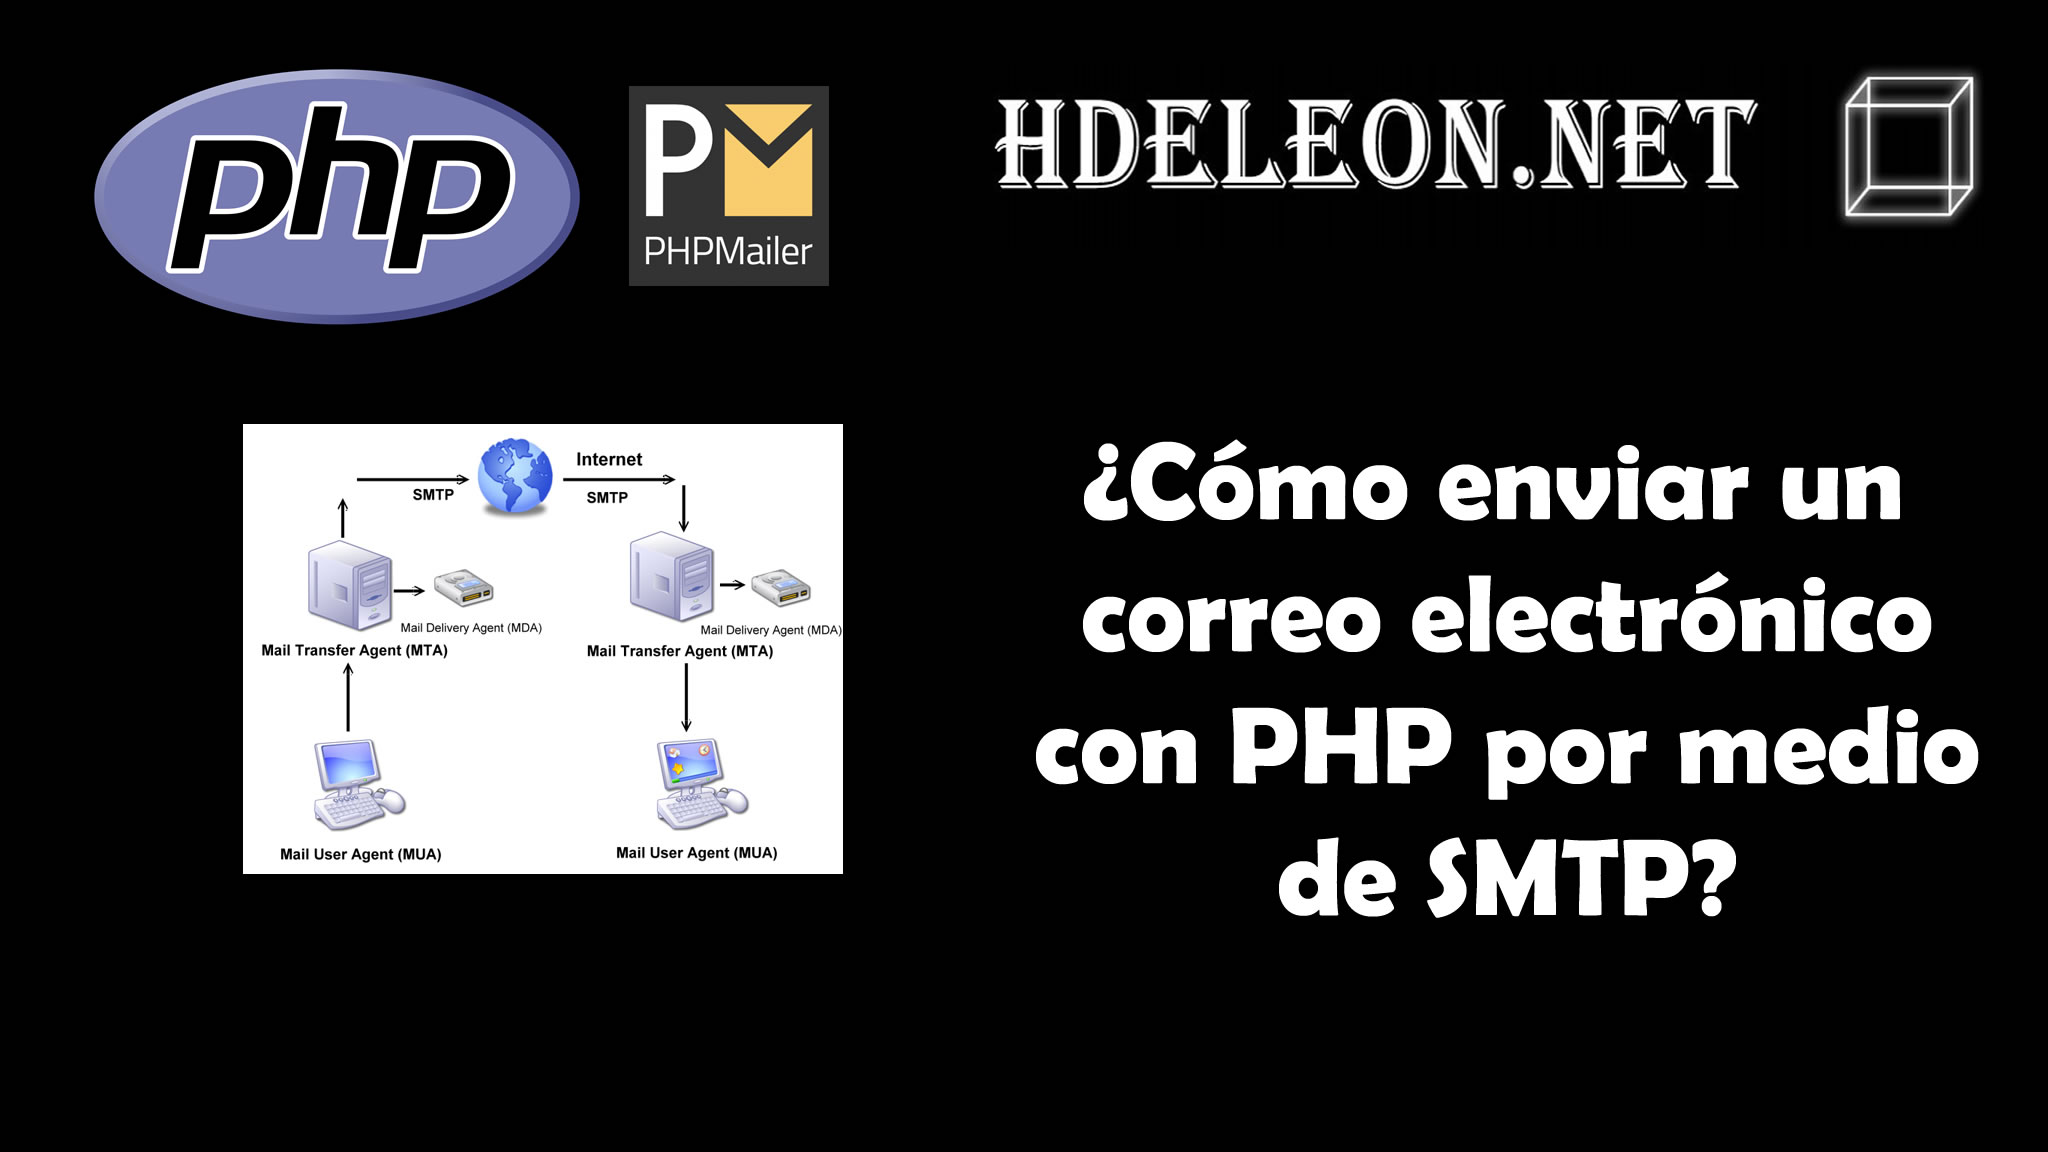 ¿Cómo enviar un correo electrónico con php por medio de SMTP? #php #phpmailer